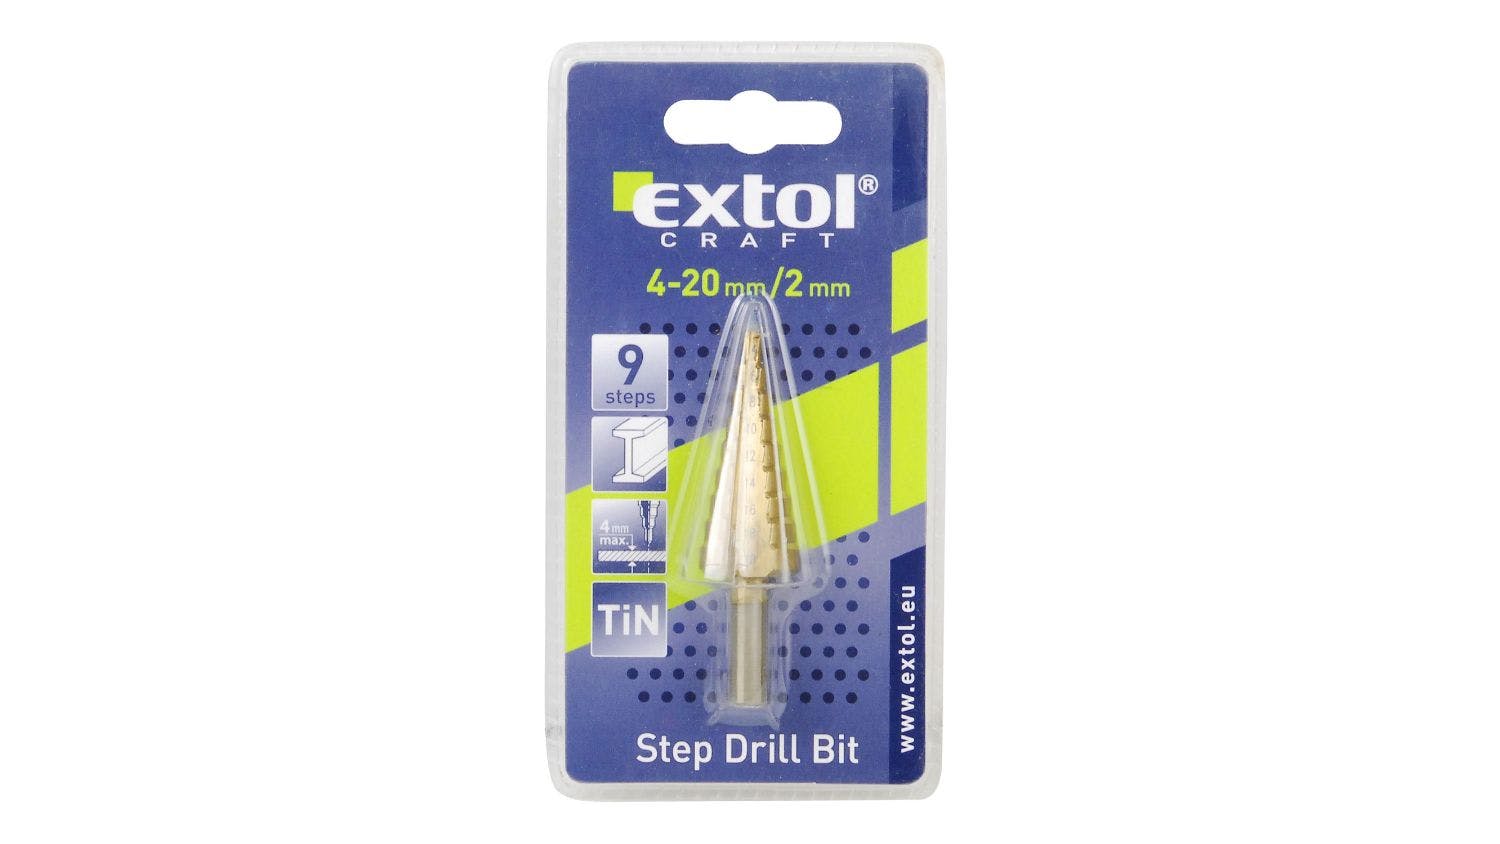 Extol 4 - 20mm Step Drill Bit 9 Steps